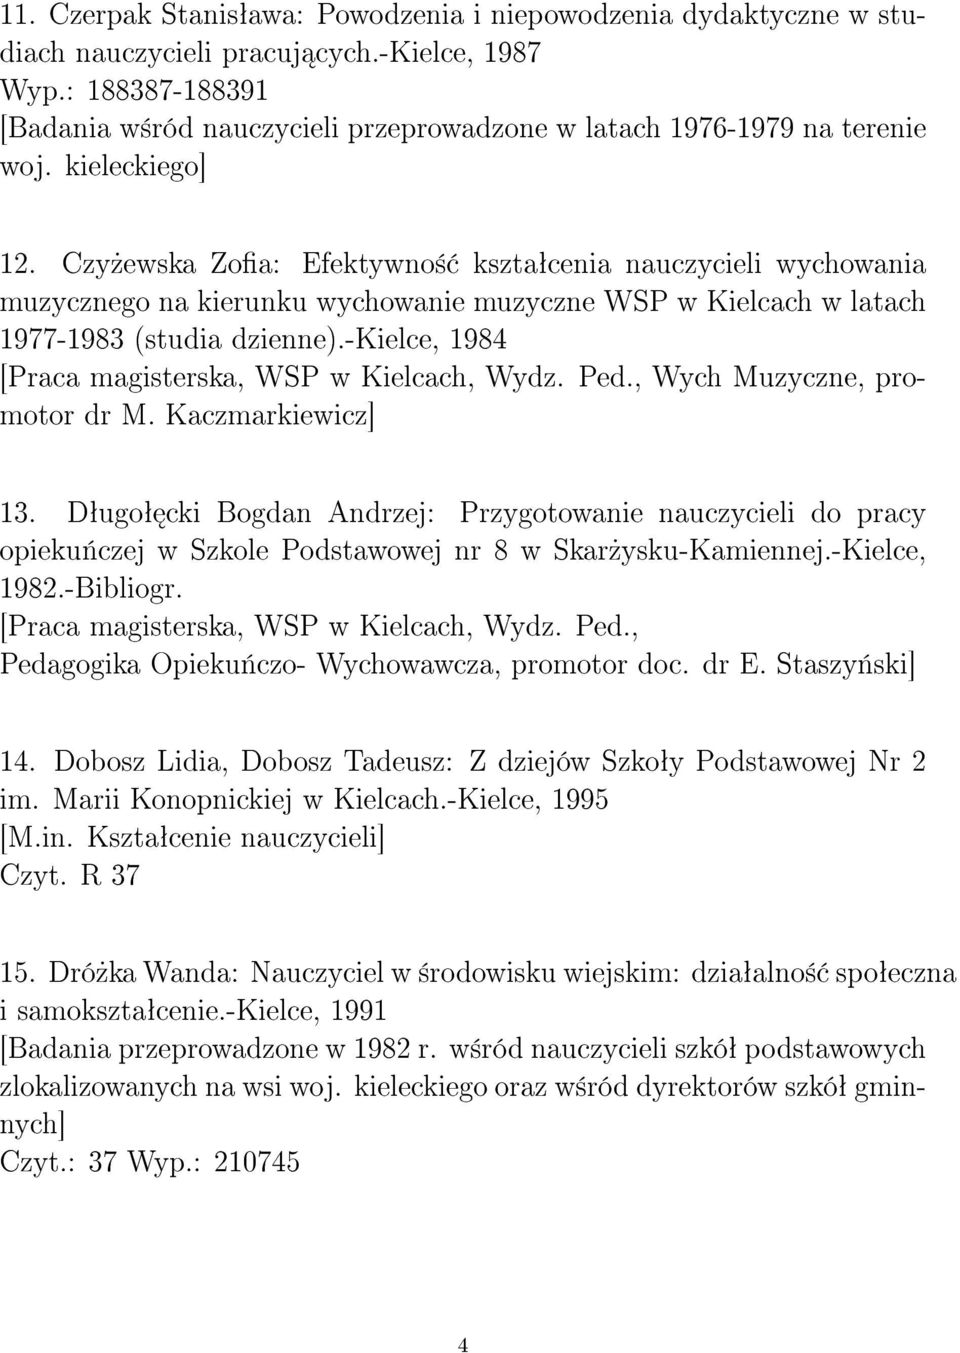 Czy»ewska Zoa: Efektywno± ksztaªcenia nauczycieli wychowania muzycznego na kierunku wychowanie muzyczne WSP w Kielcach w latach 1977-1983 (studia dzienne).